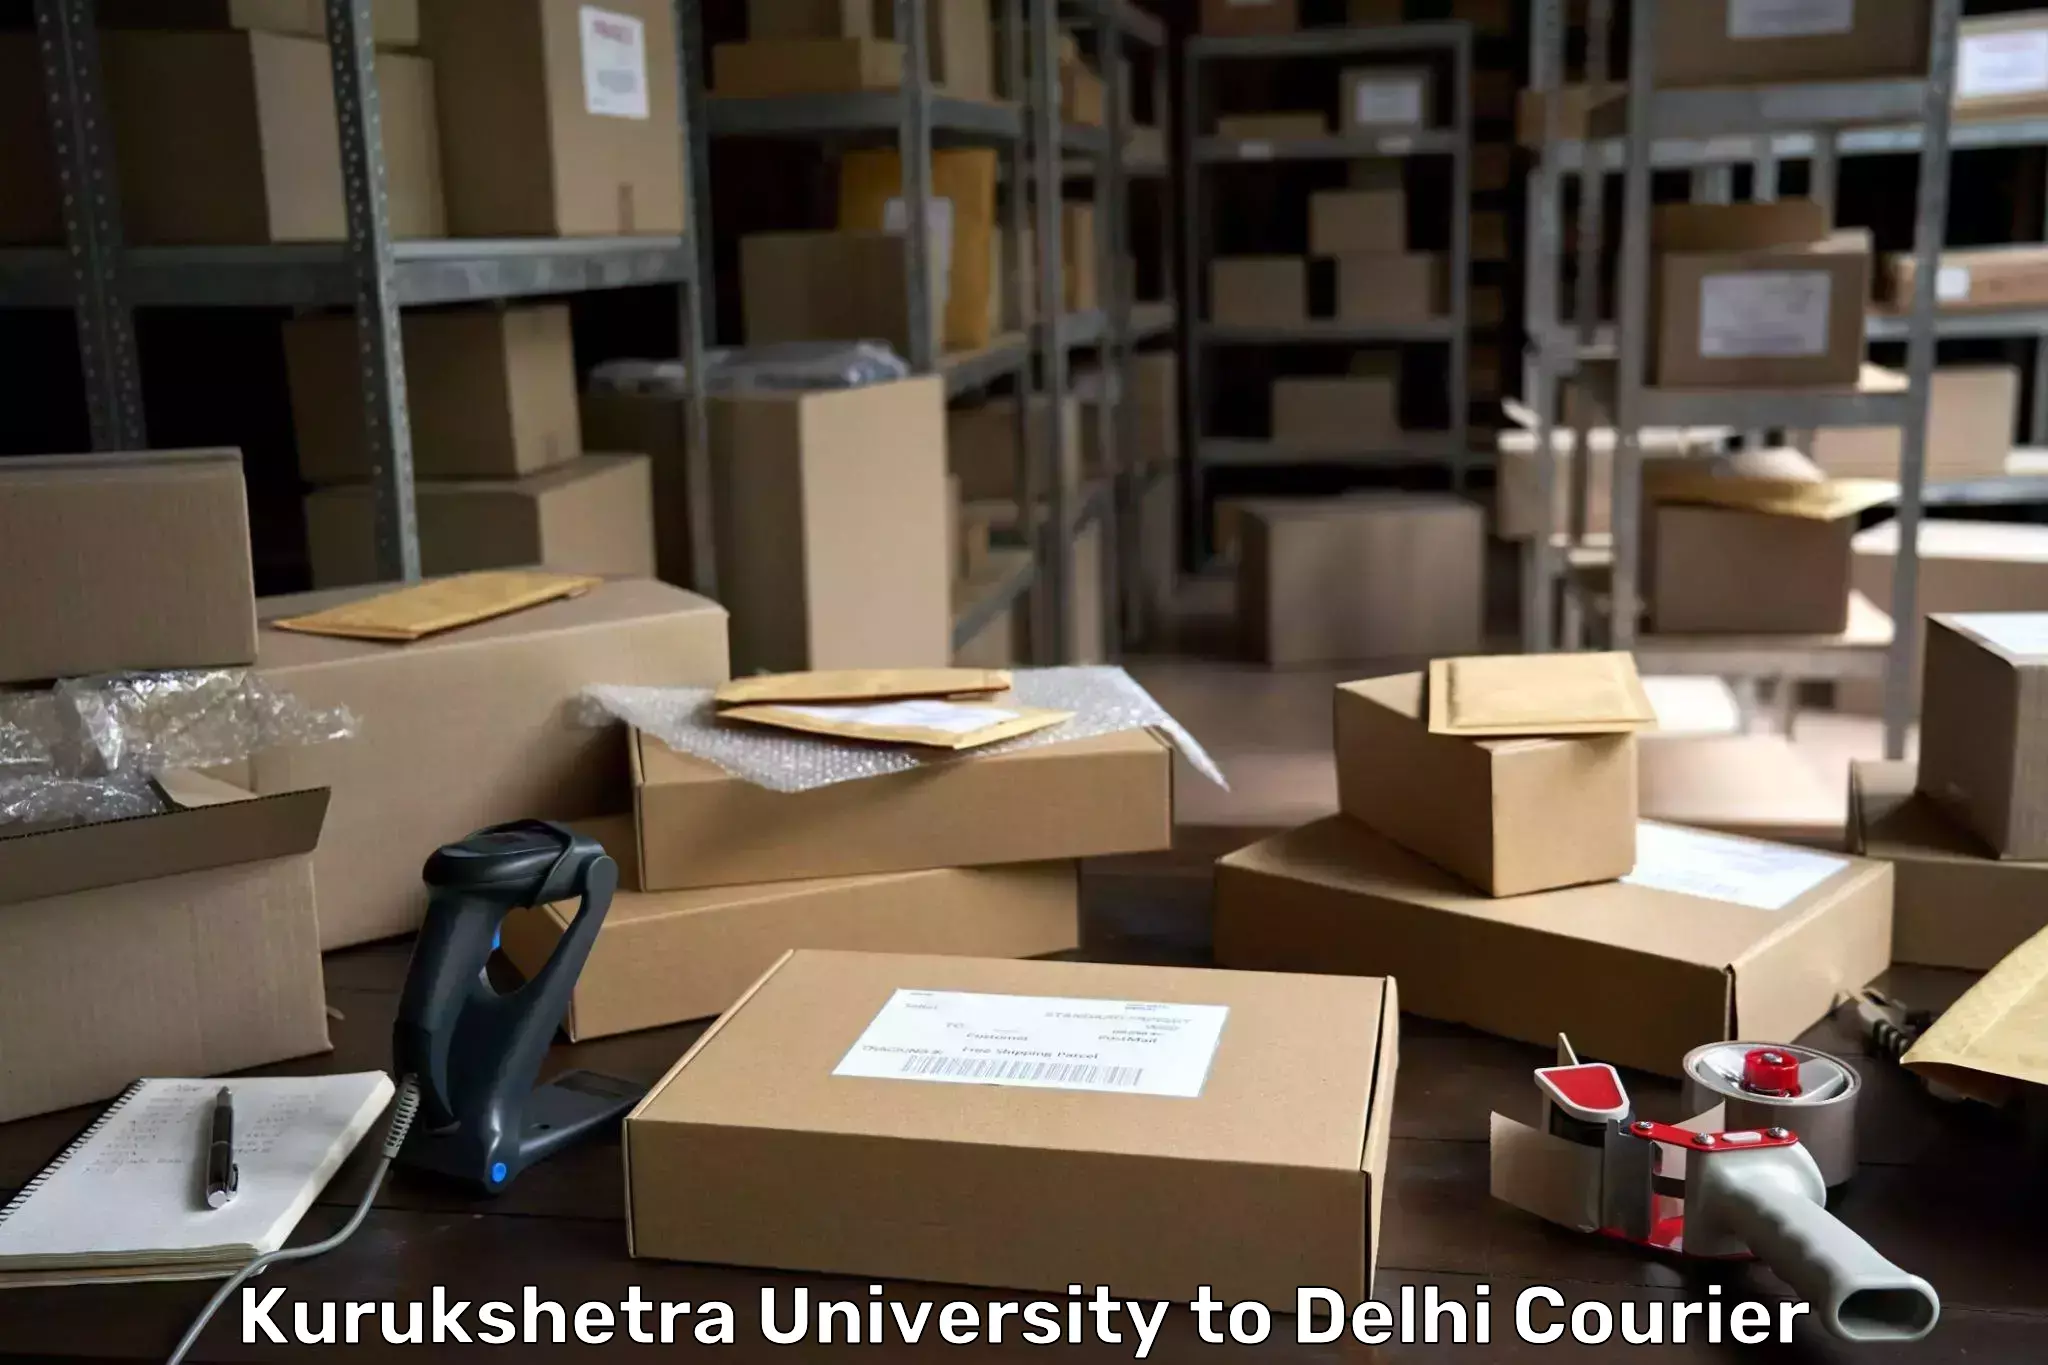 Large package courier Kurukshetra University to Jawaharlal Nehru University New Delhi